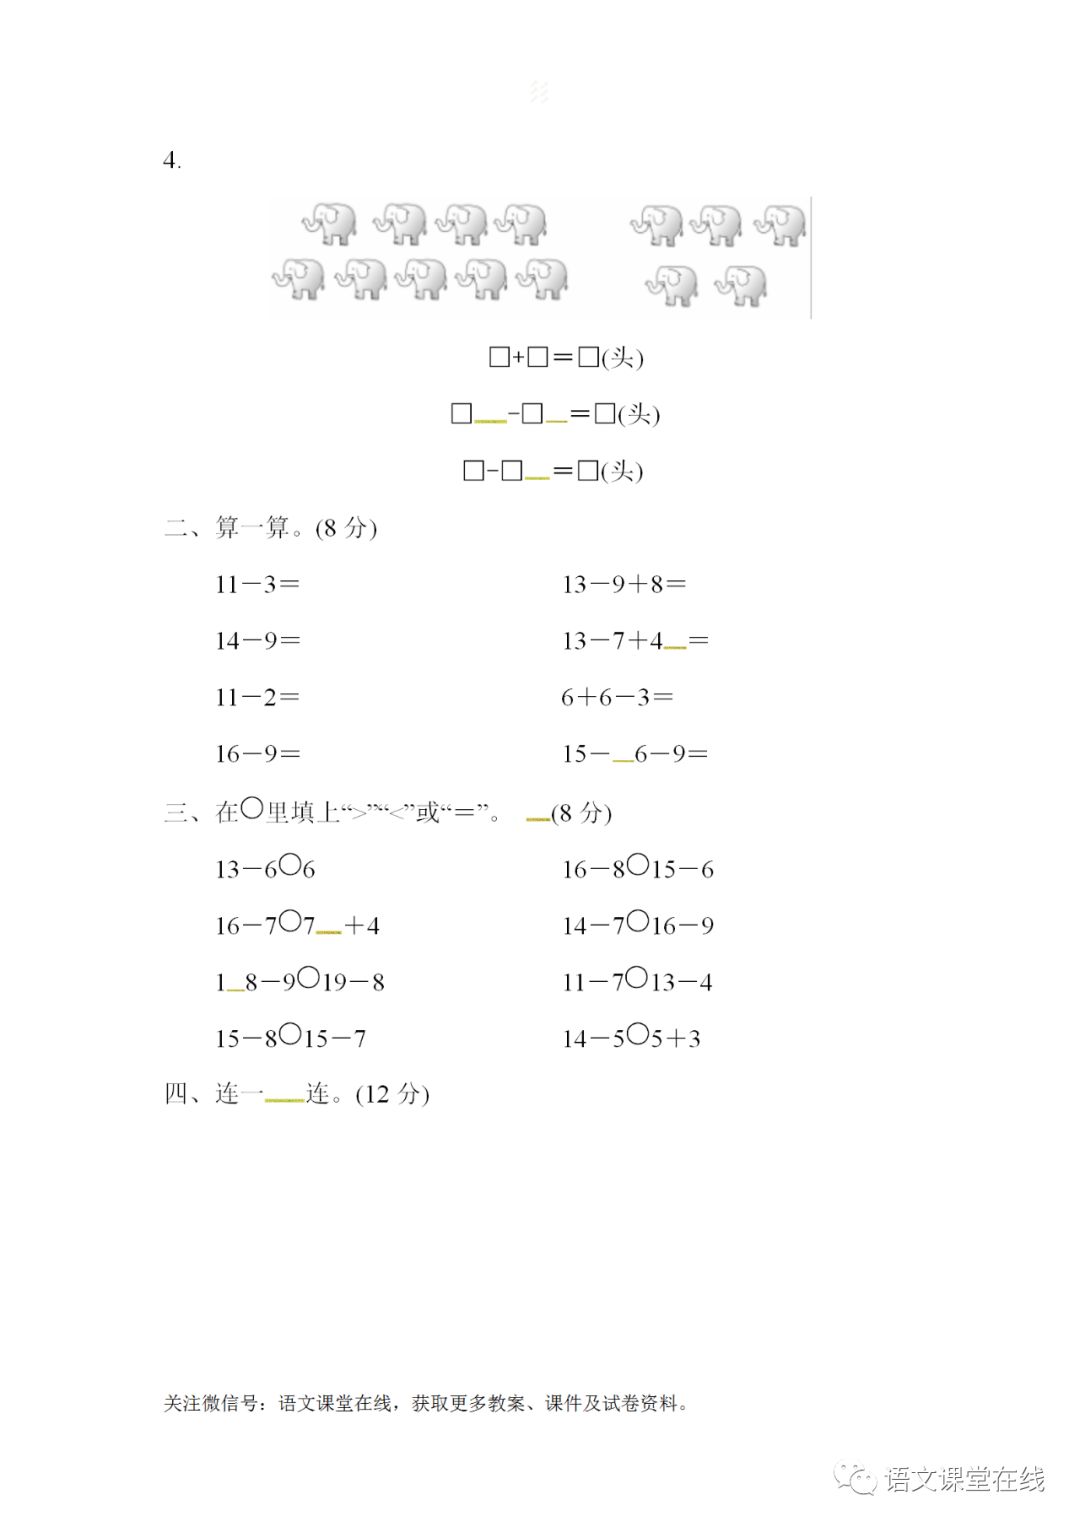 青岛版小学数学1-6年下册多套第1单元单元卷附答案